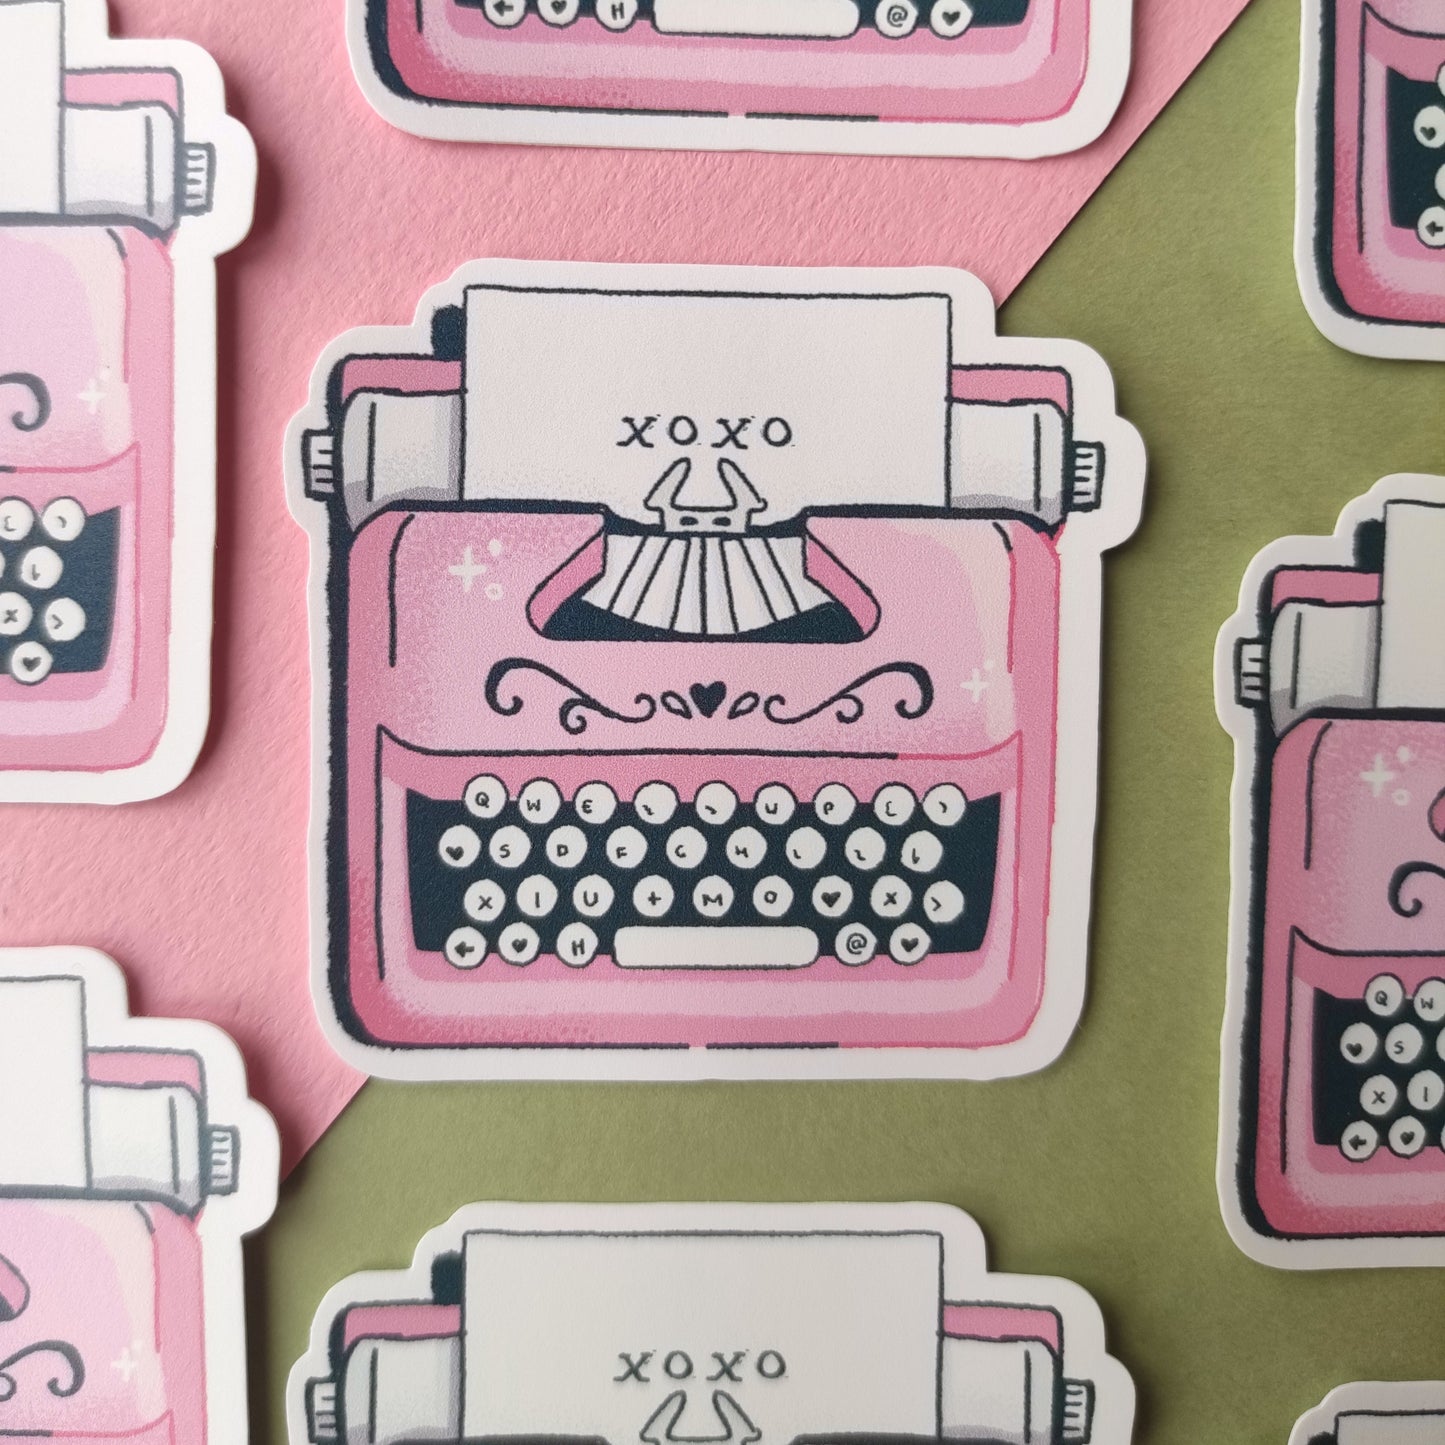 Typewriter sticker